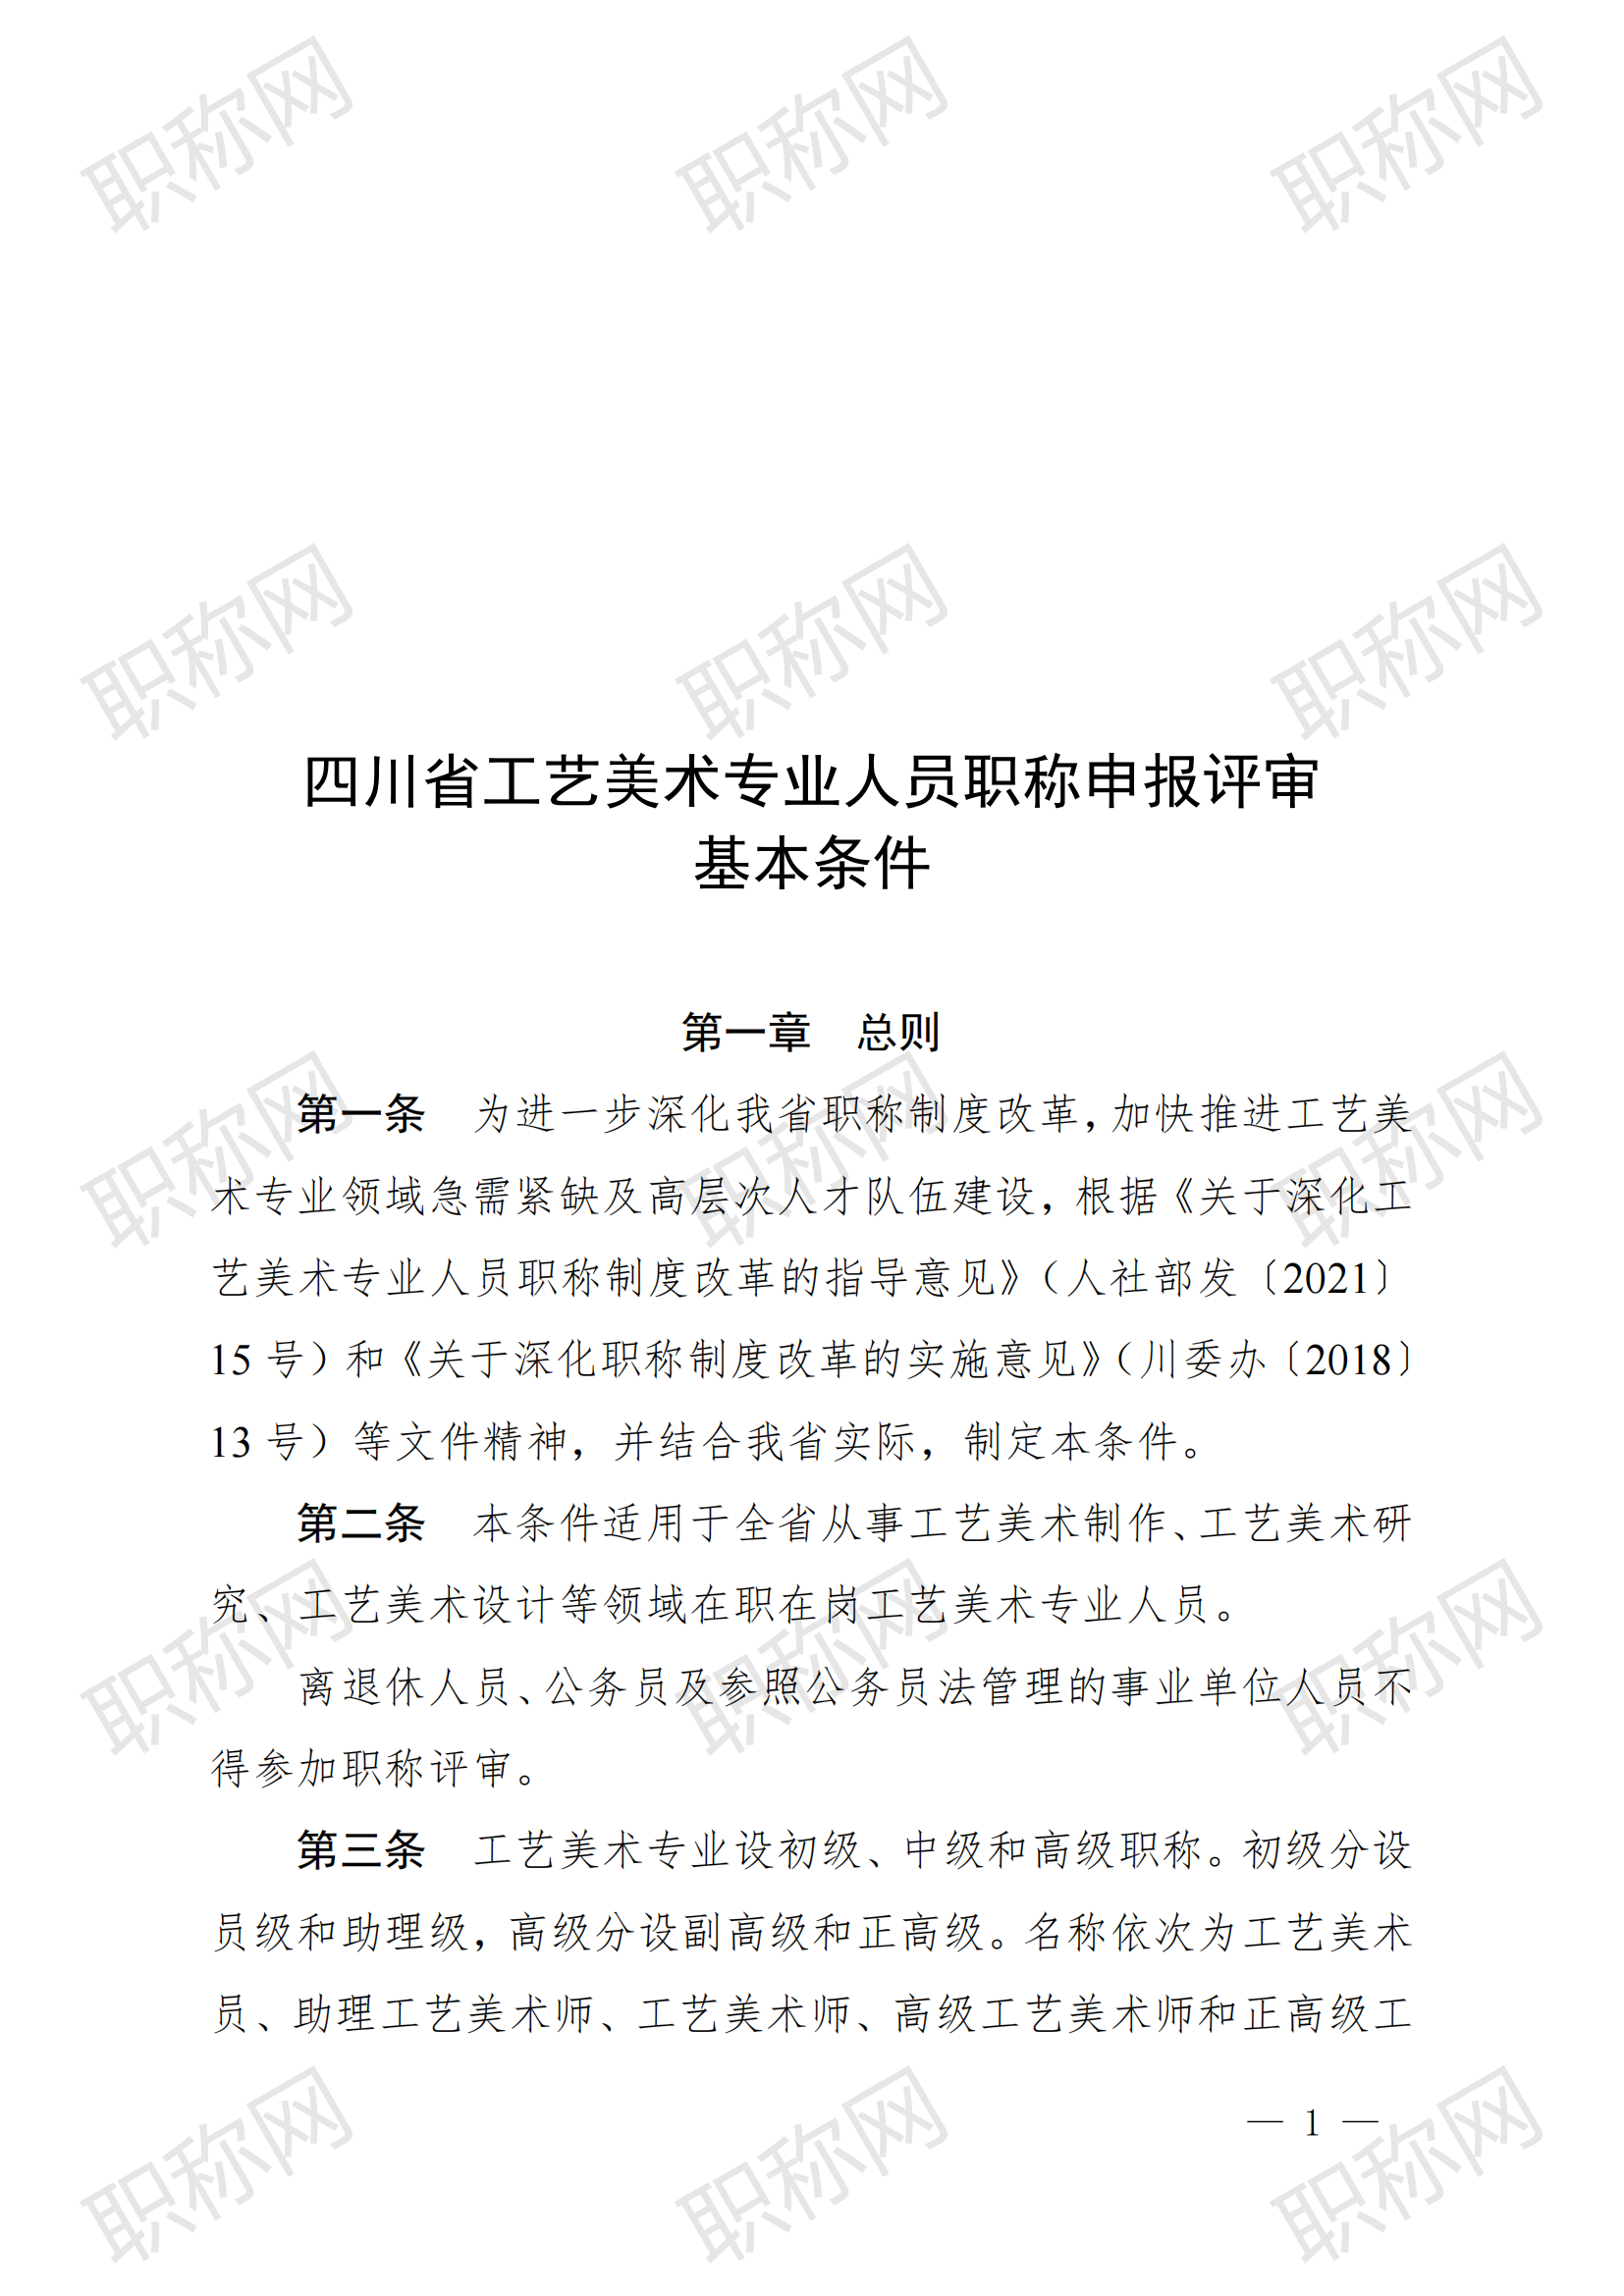 关于印发《四川省工艺美术专业人员职称申报评审基本条件》的通知_20240422105401_00.png